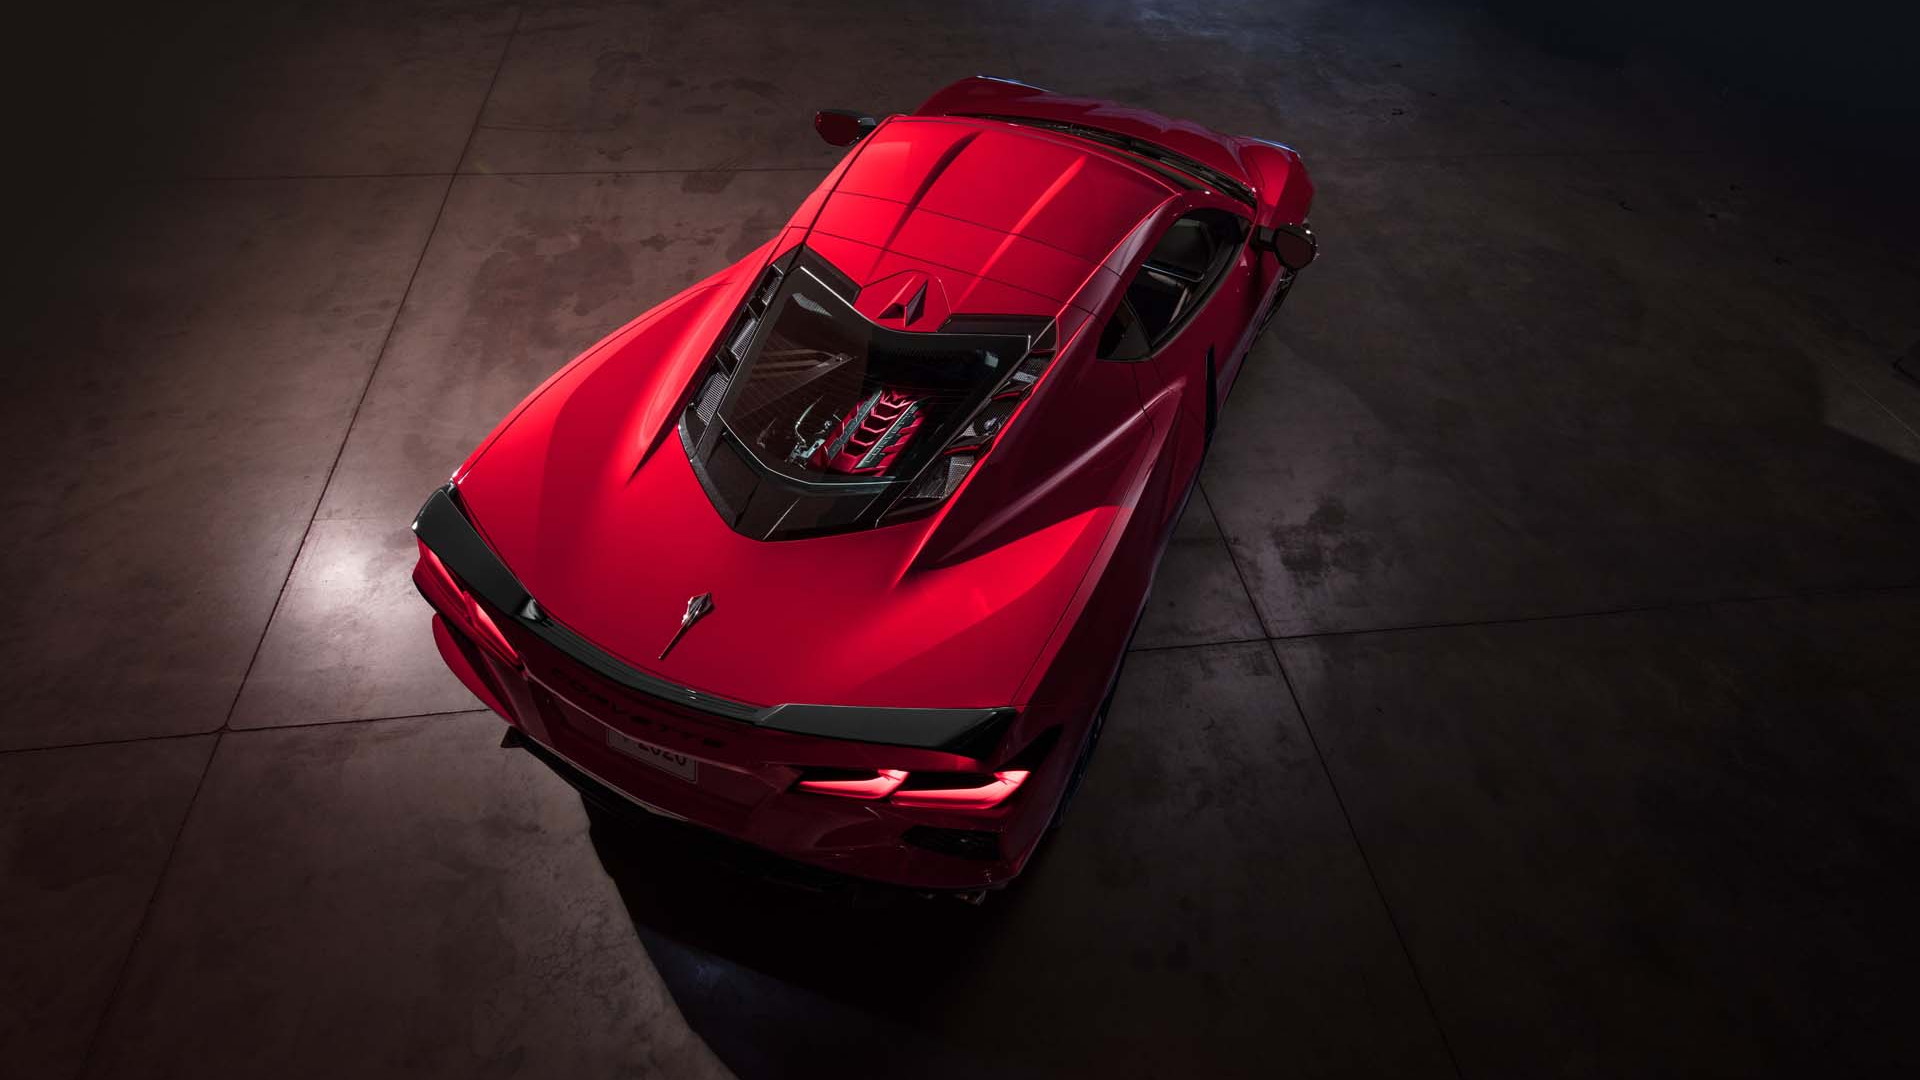 New 2020 Corvette Stingray Priced at $59995